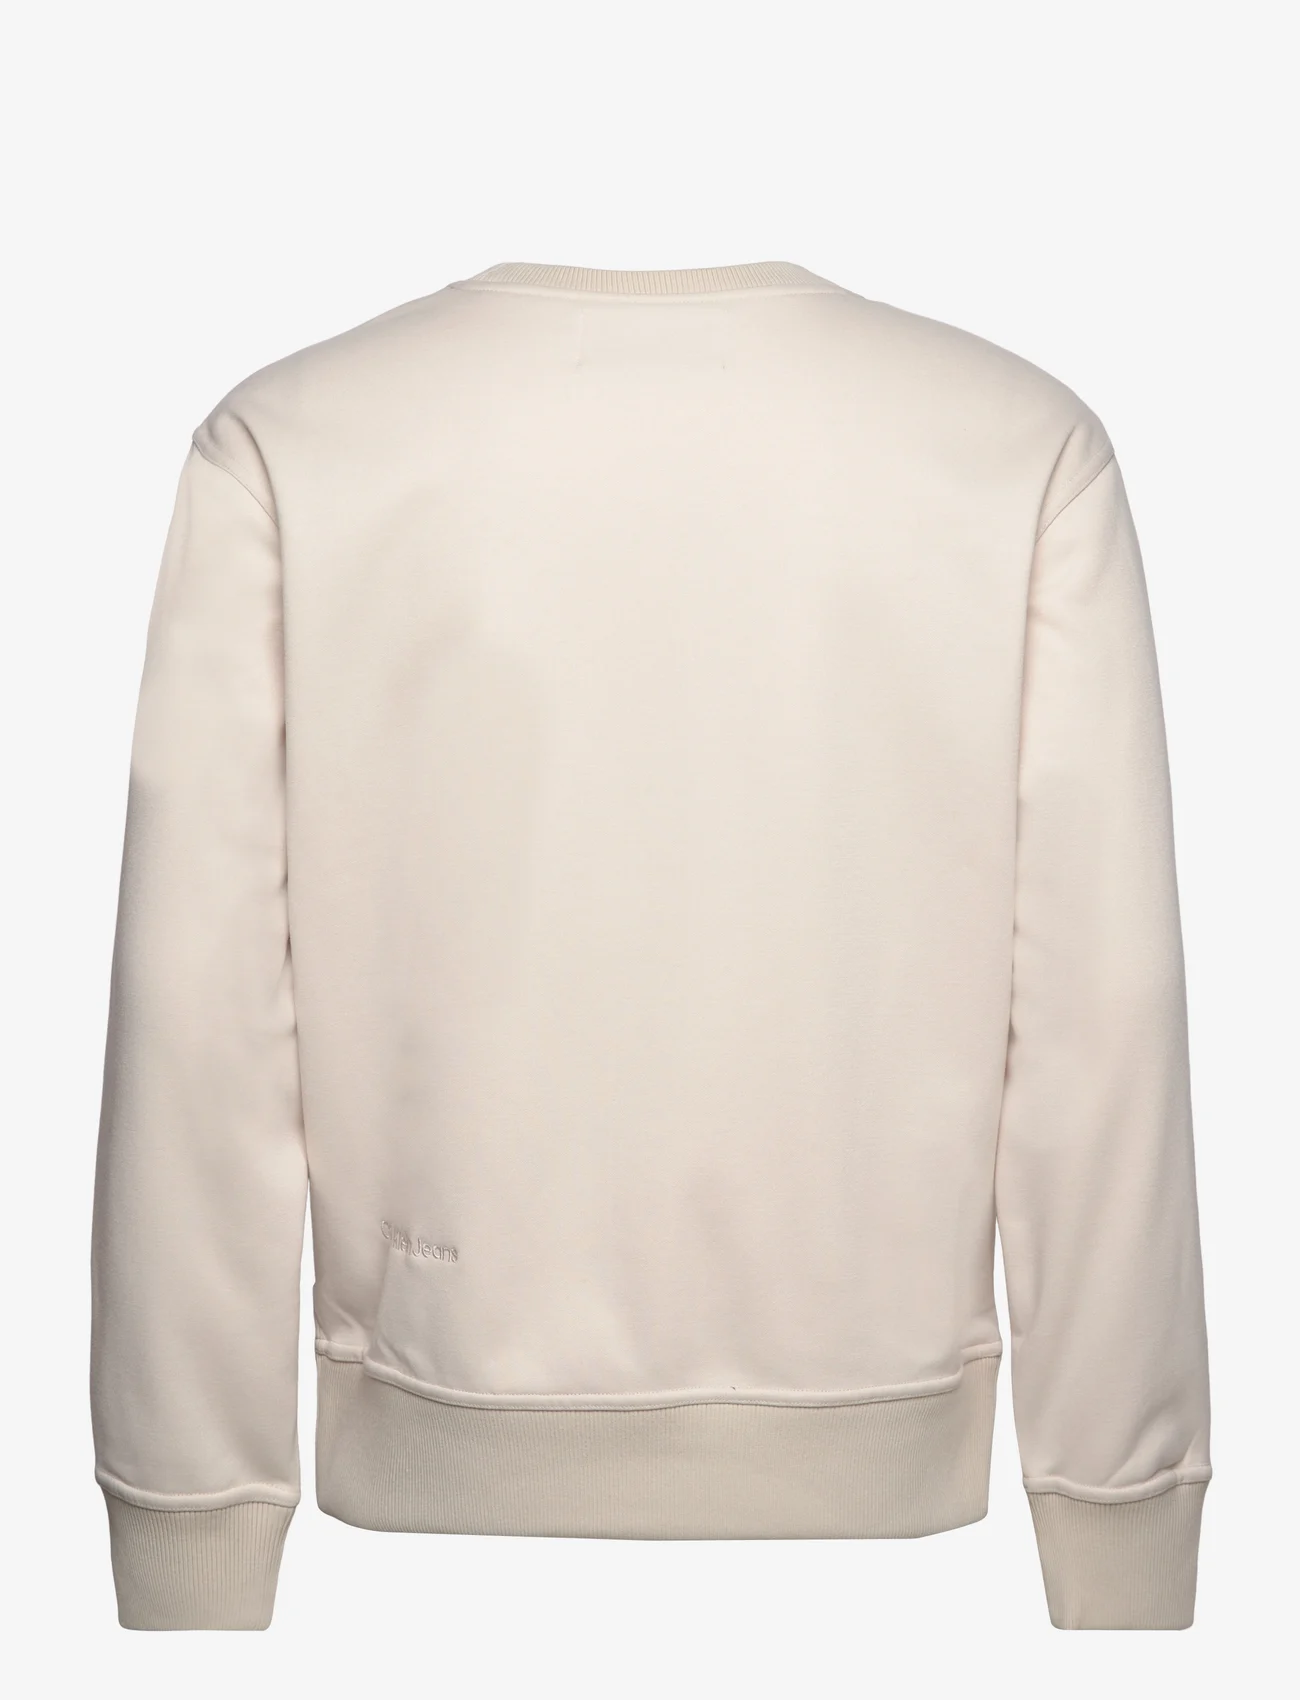 Calvin Klein Jeans - CK CHENILLE CREW NECK - sweatshirts - eggshell - 1